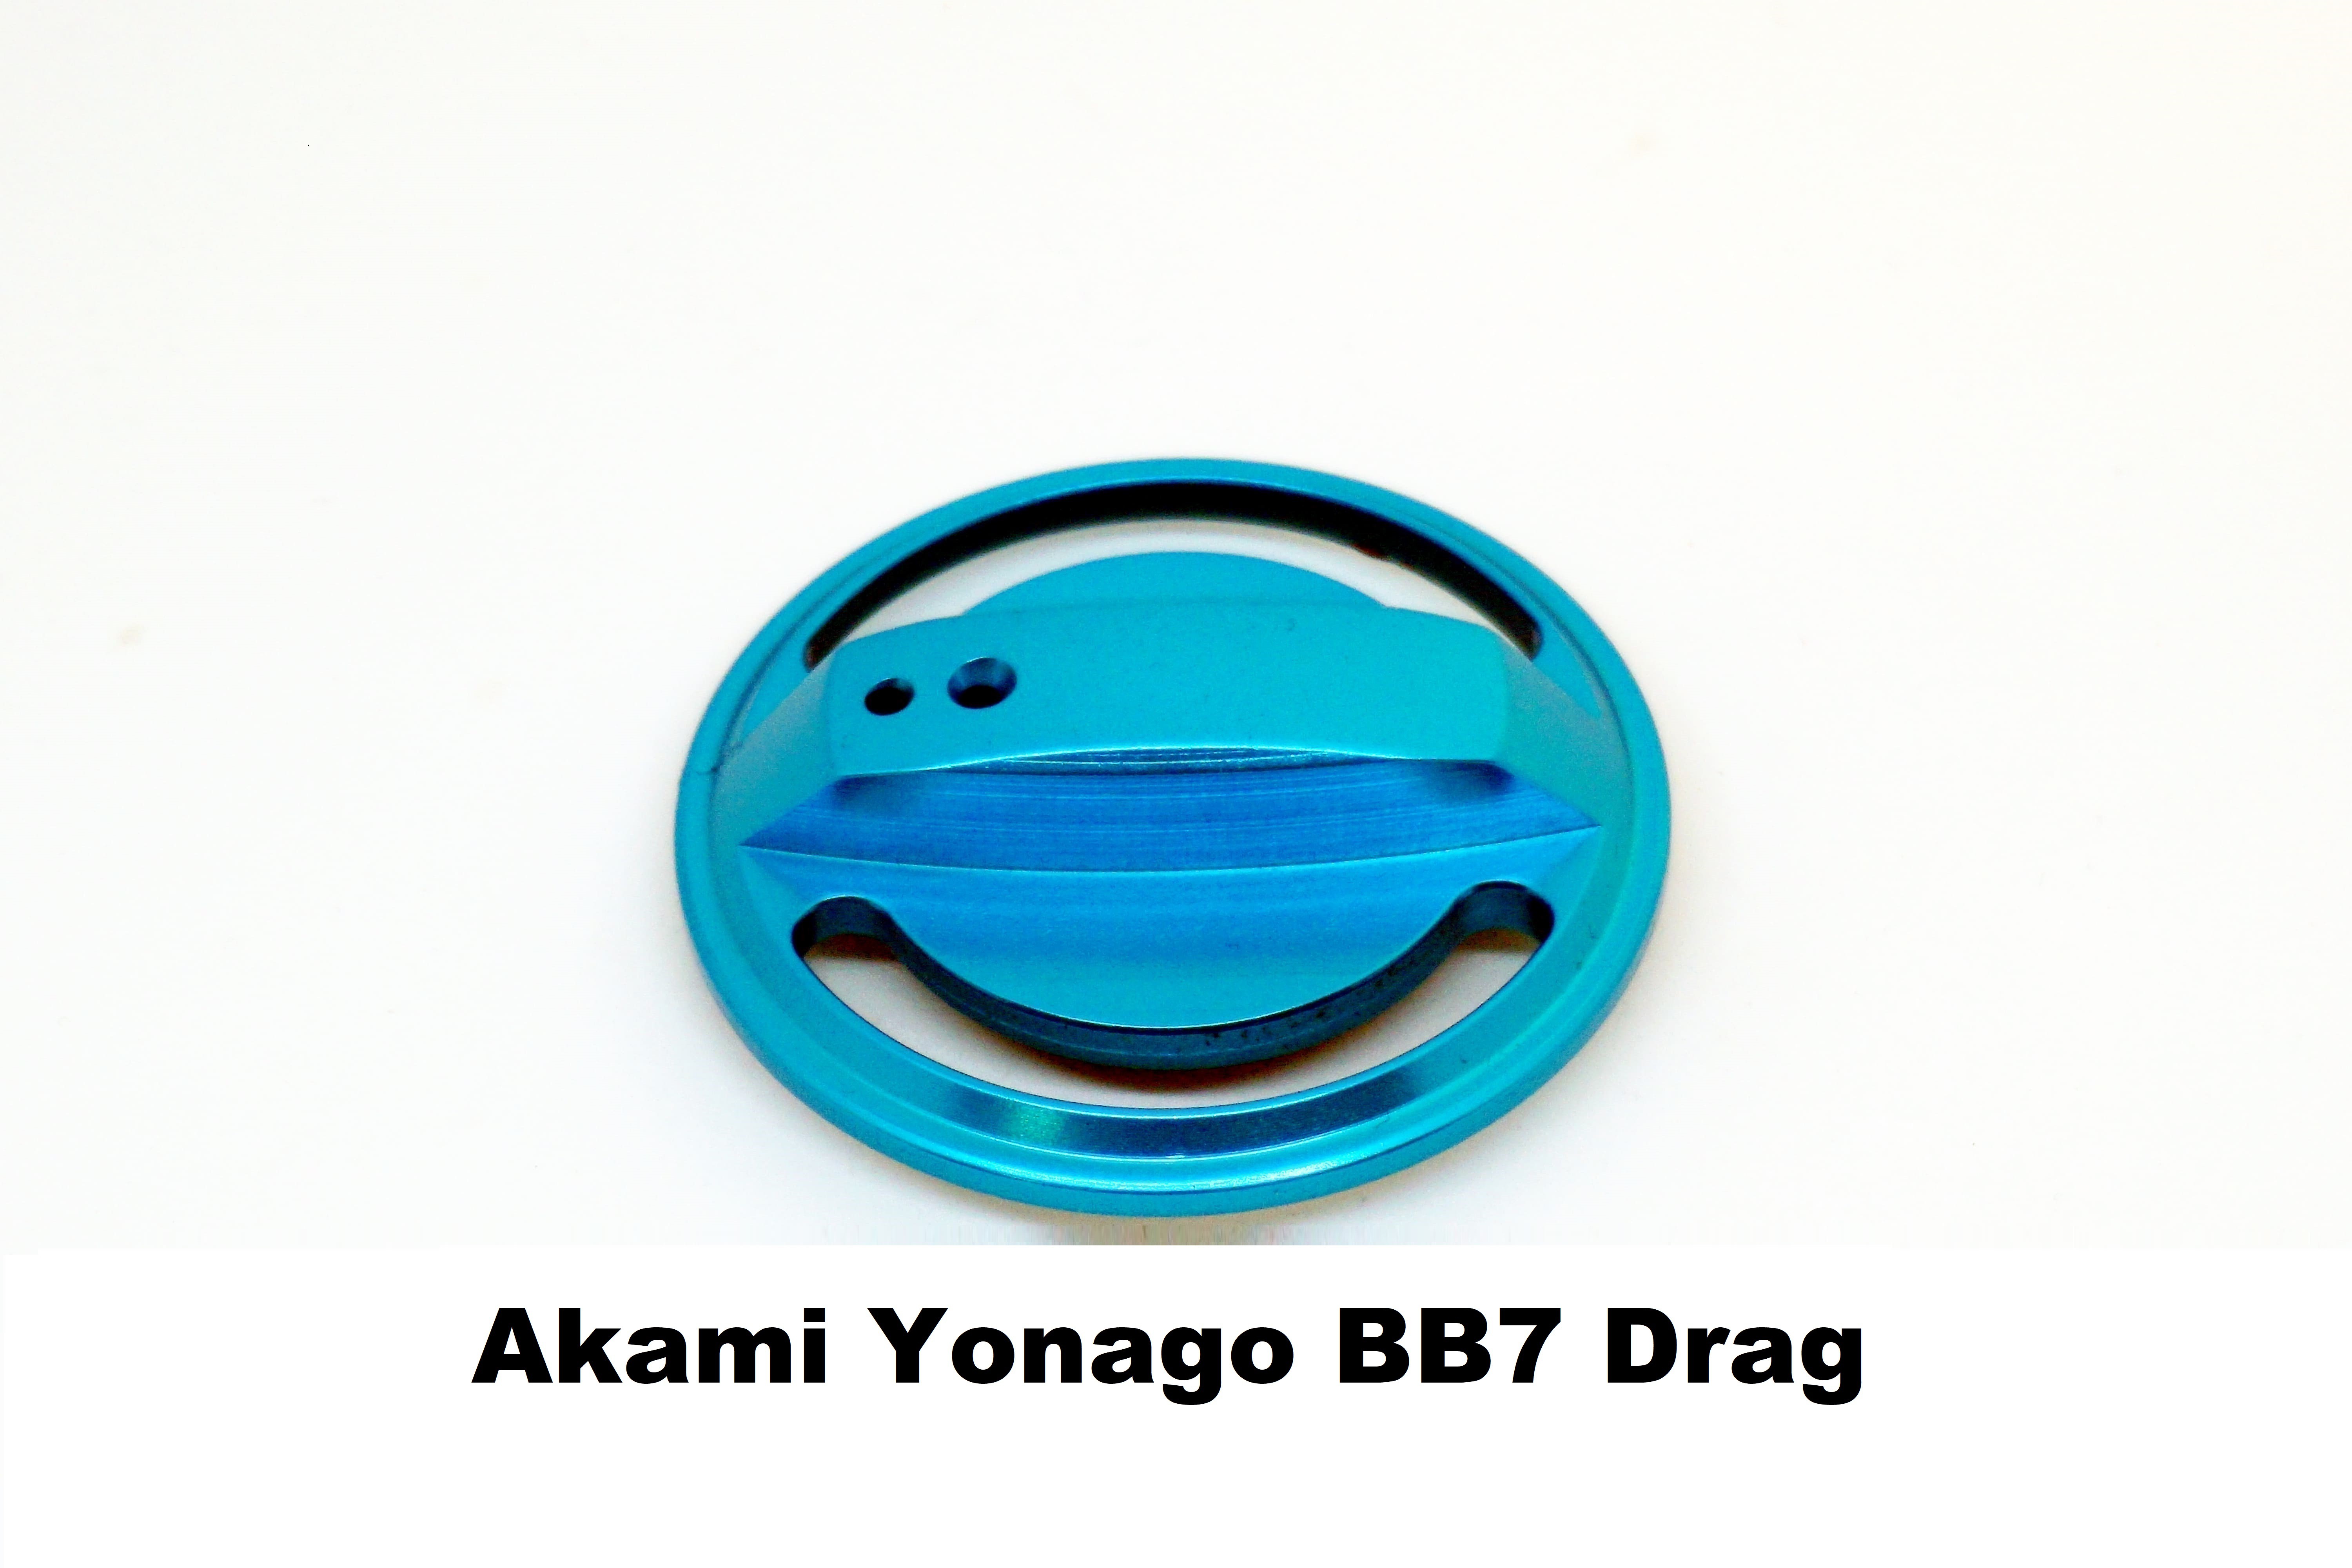 Tapón de Freno Akami Yonago BB7 Drag